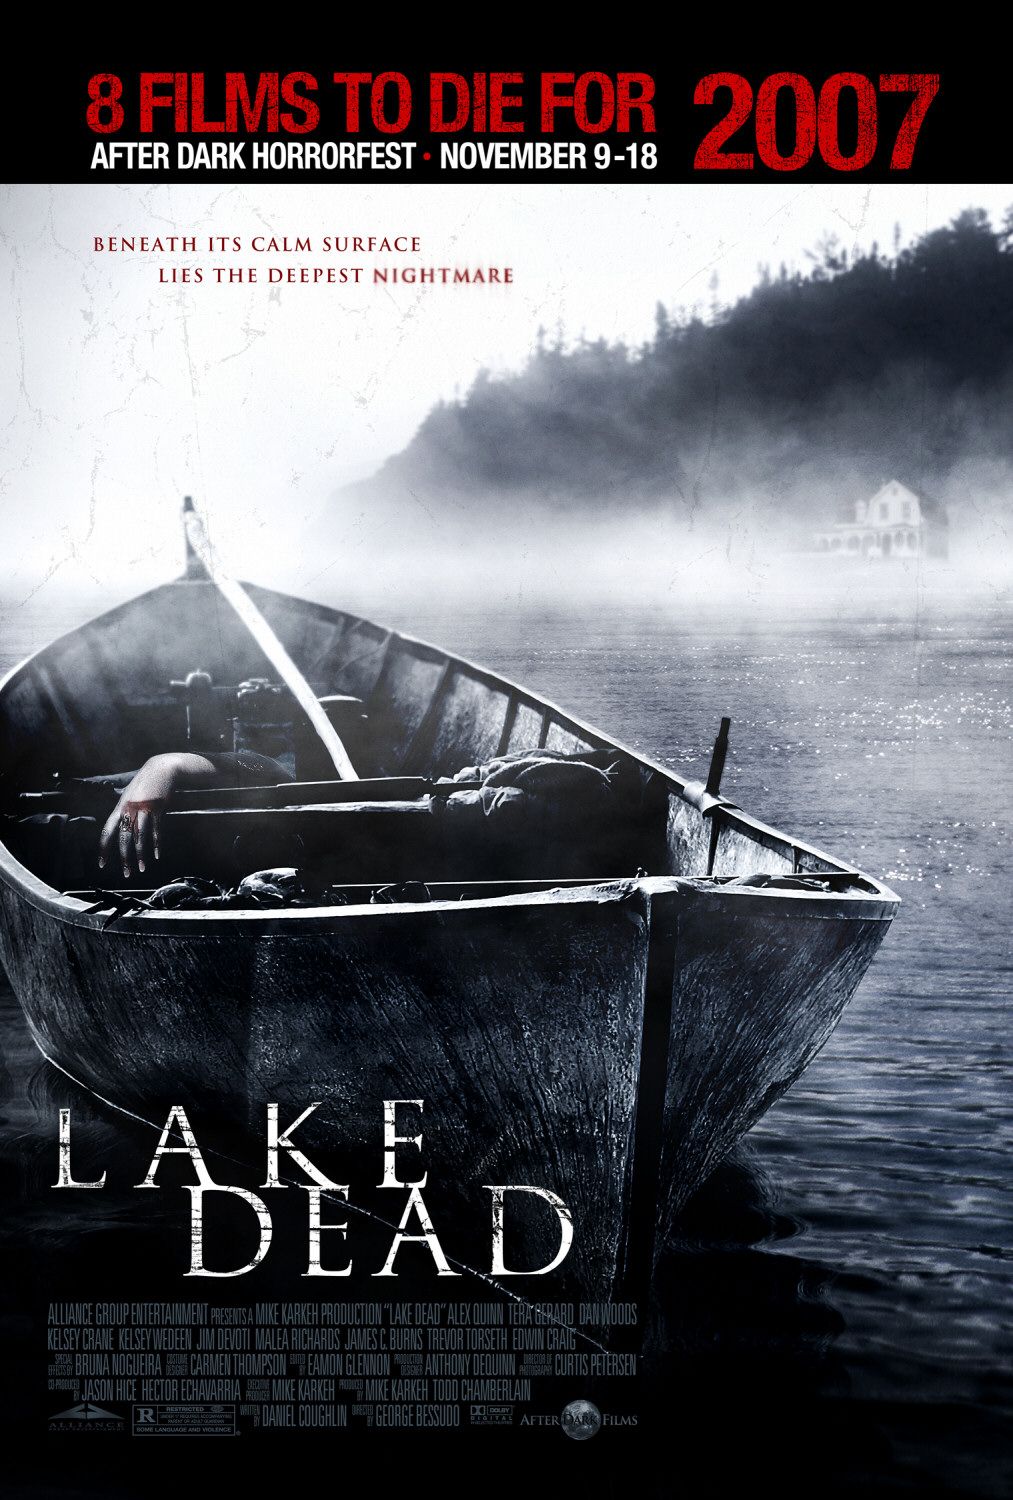 Постер - Озеро смерти: 1013x1500 / 257 Кб